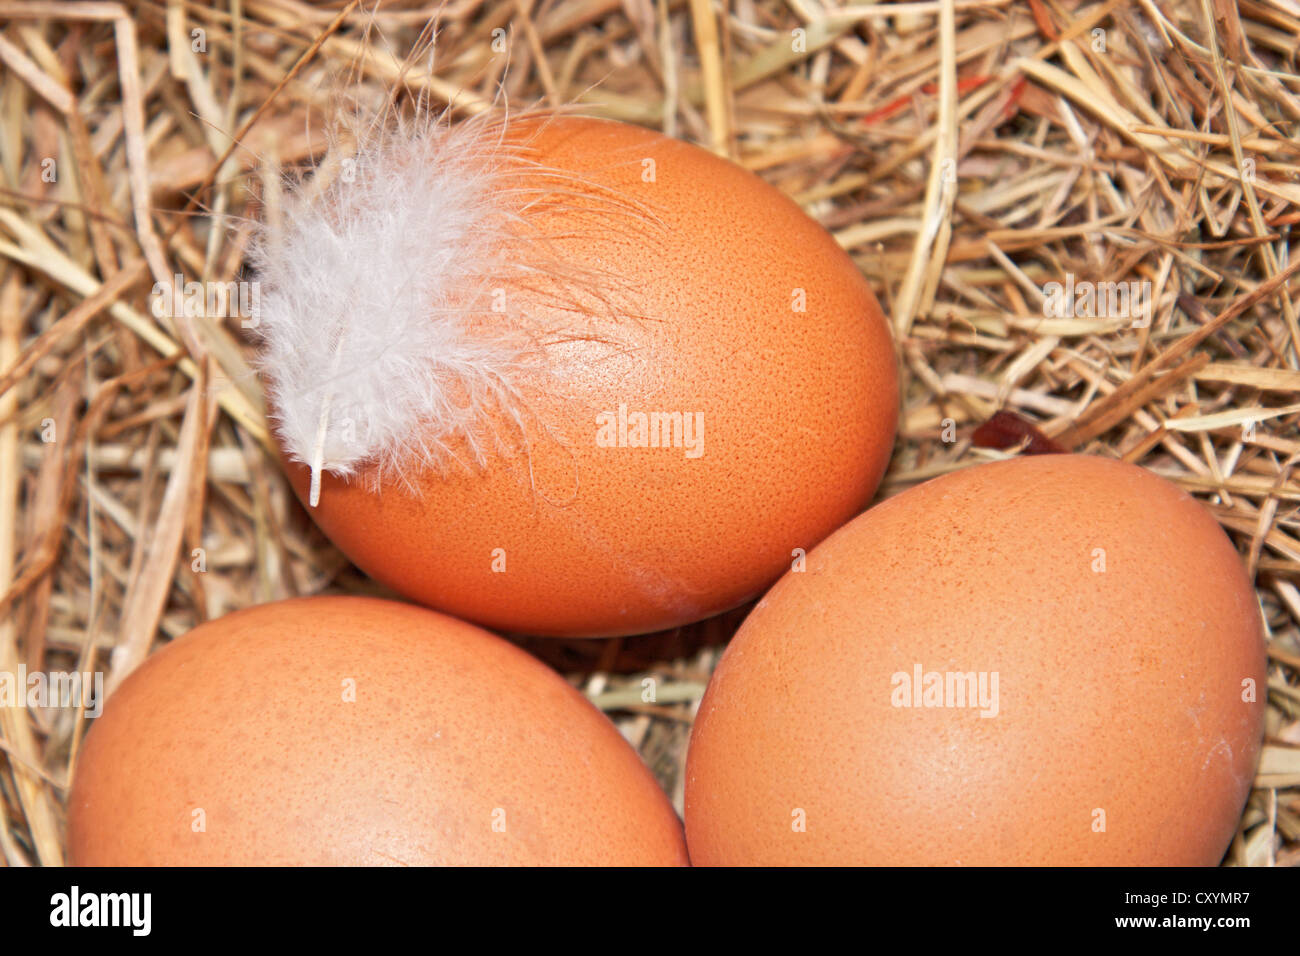 Los huevos de pollo, huevos orgánicos, con plumas, huevos de gallinas free run Foto de stock